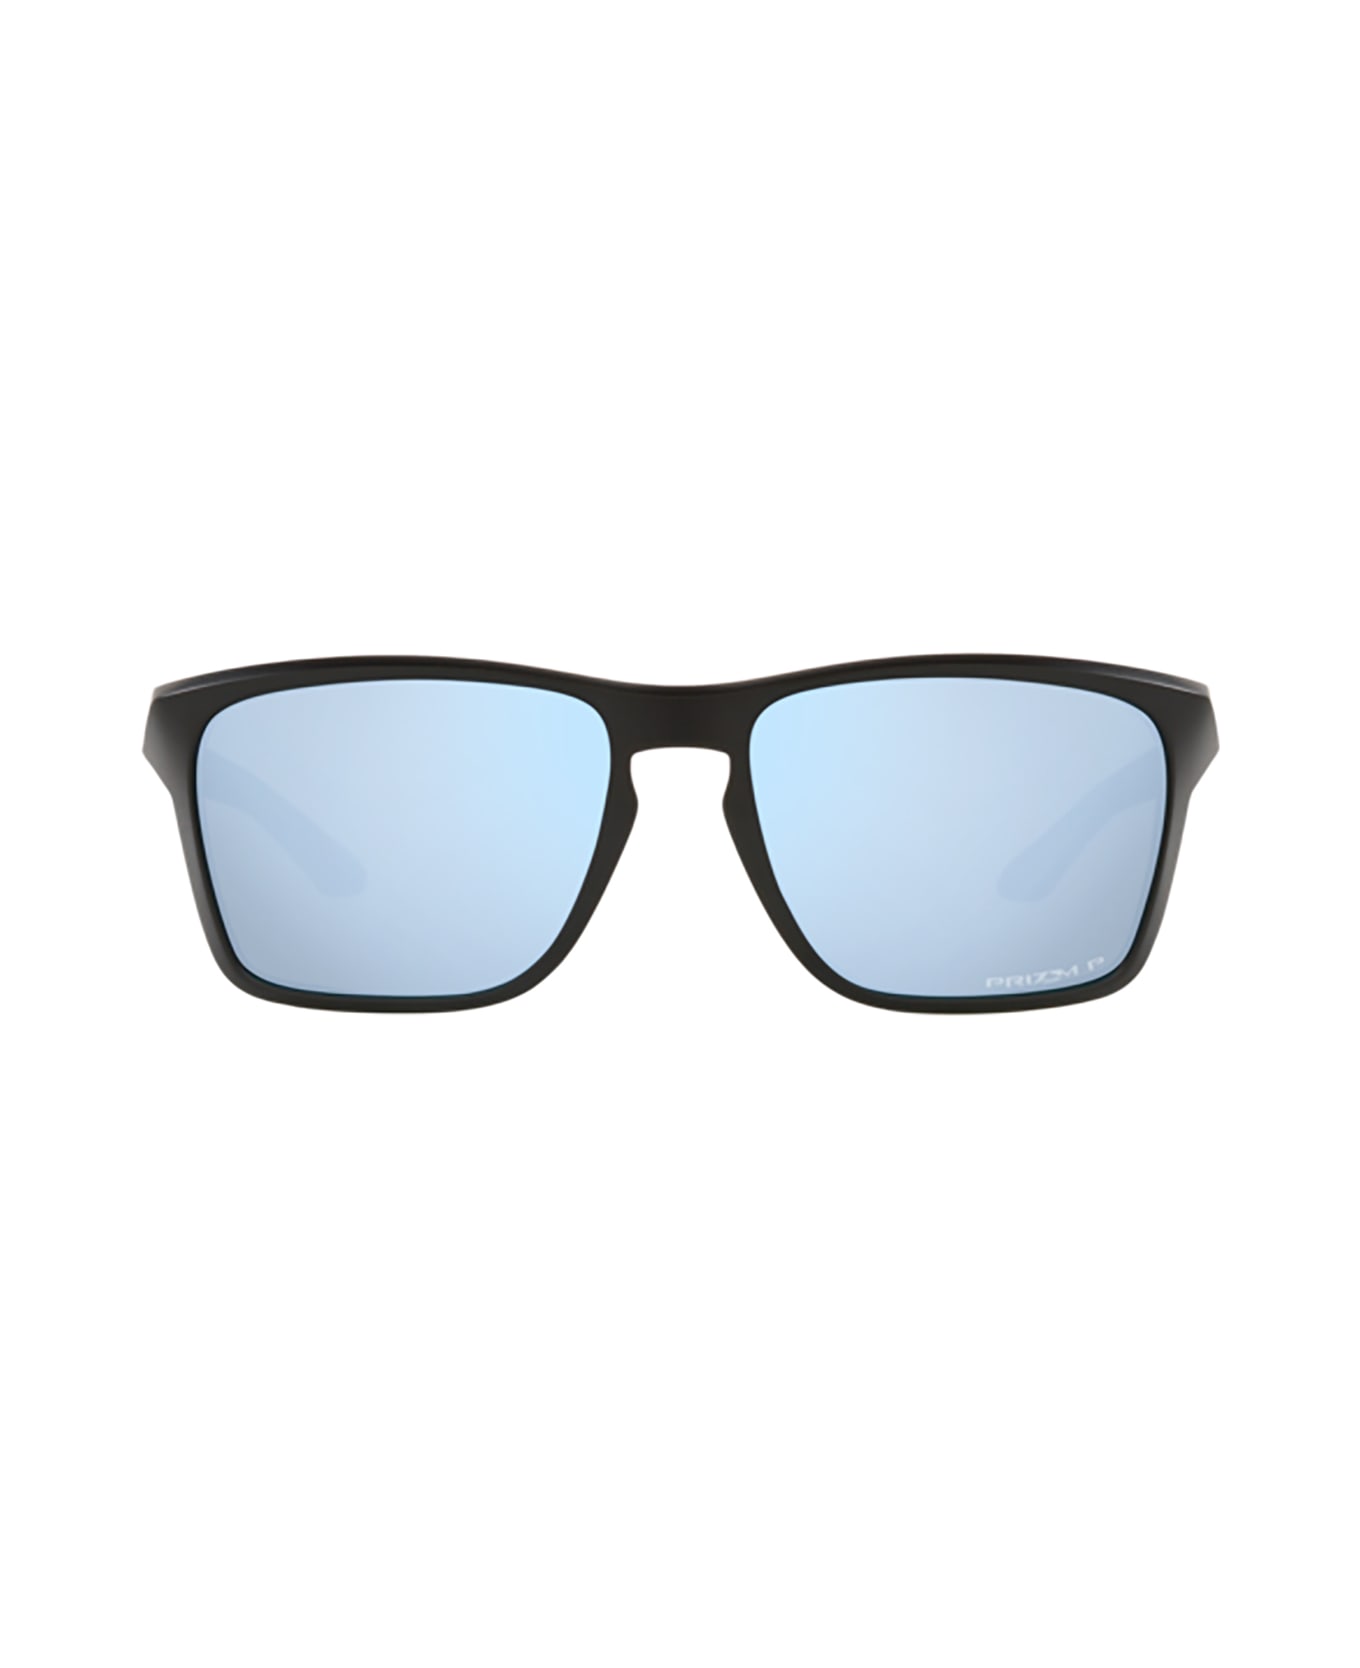 Oakley Oo9448 Matte Black Sunglasses - Matte black サングラス